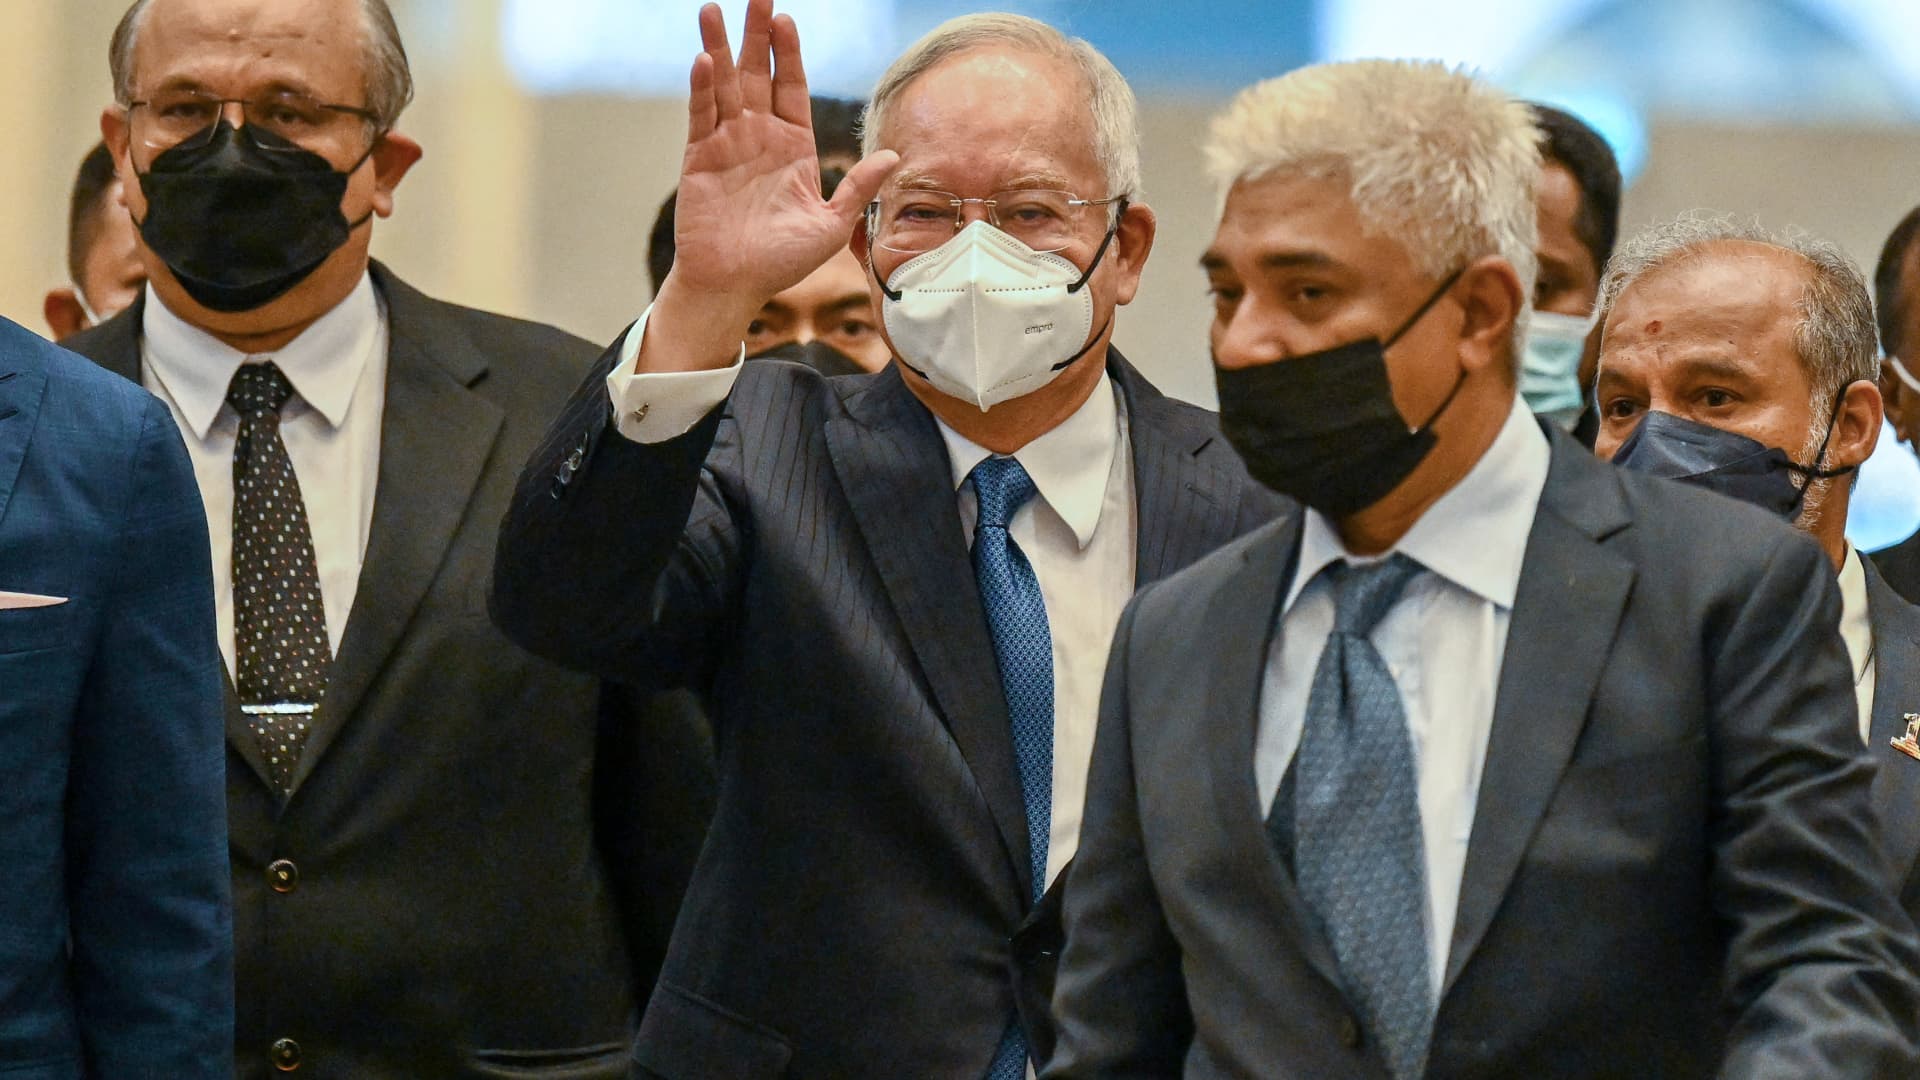 La prison sera dure pour l’ancien Premier ministre malaisien Najib Razak : Anwar Ibrahim